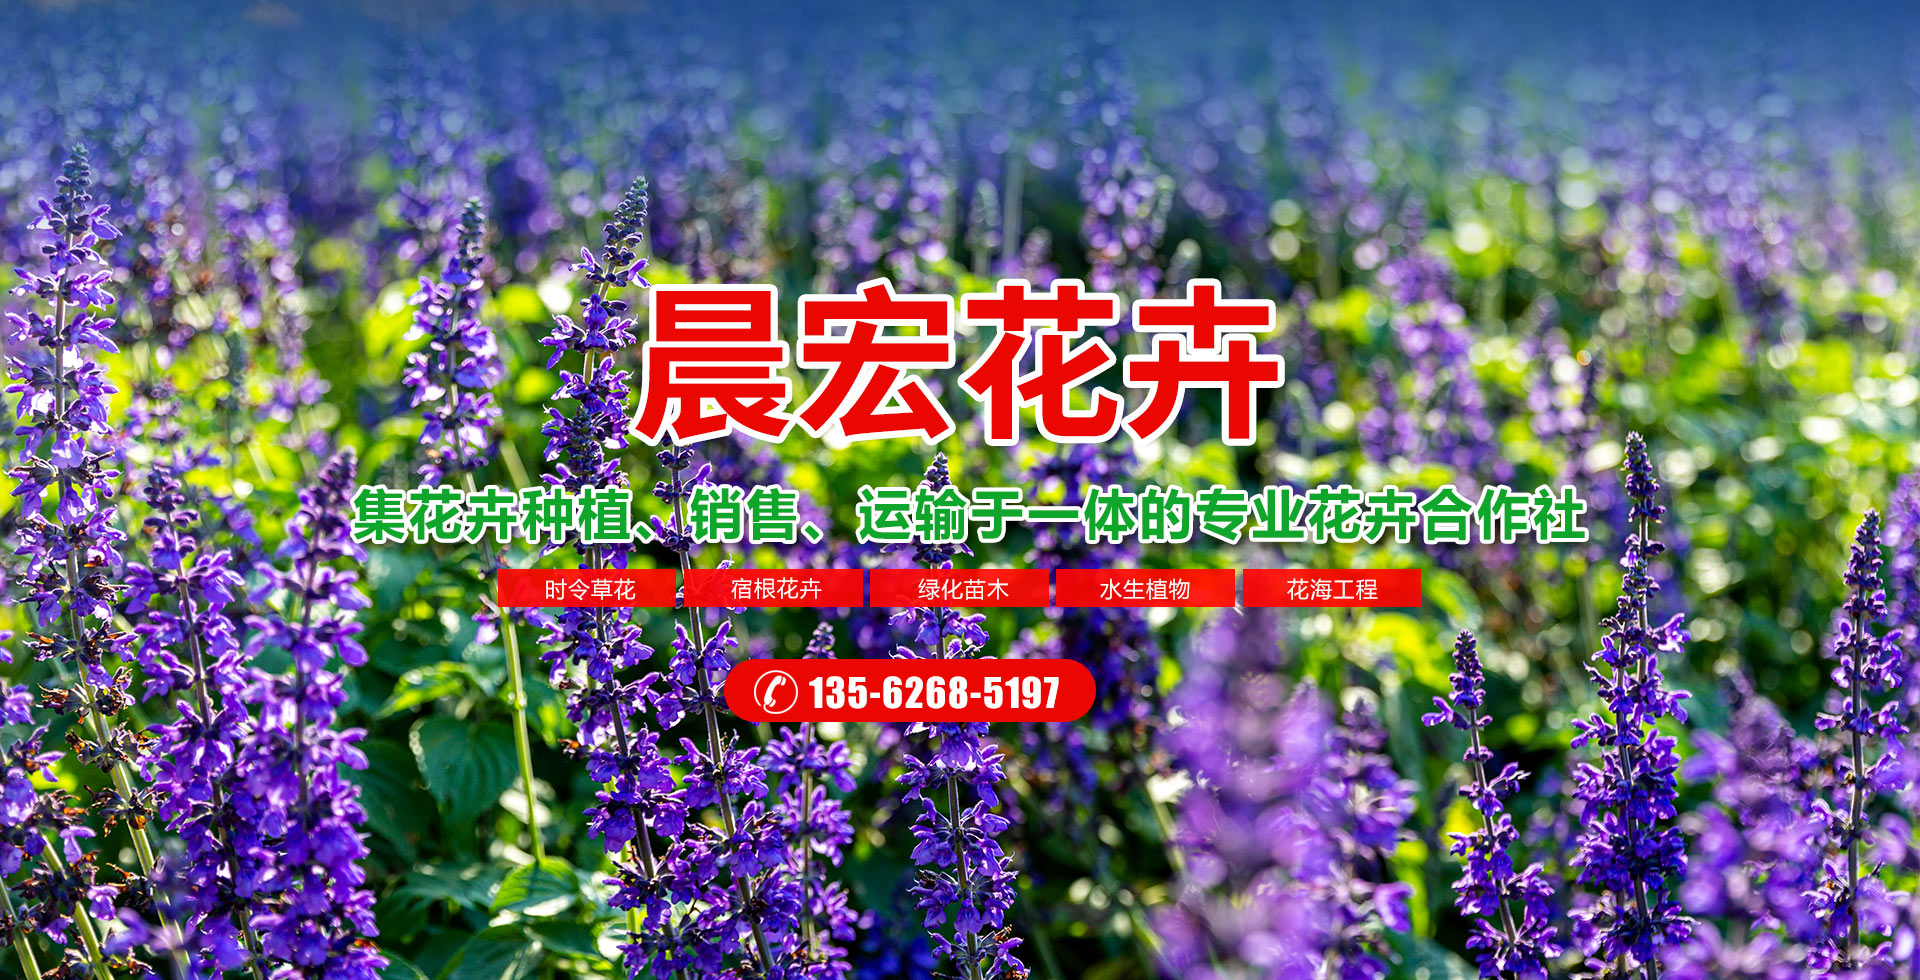 青州市晨宏花卉苗木专业合作社